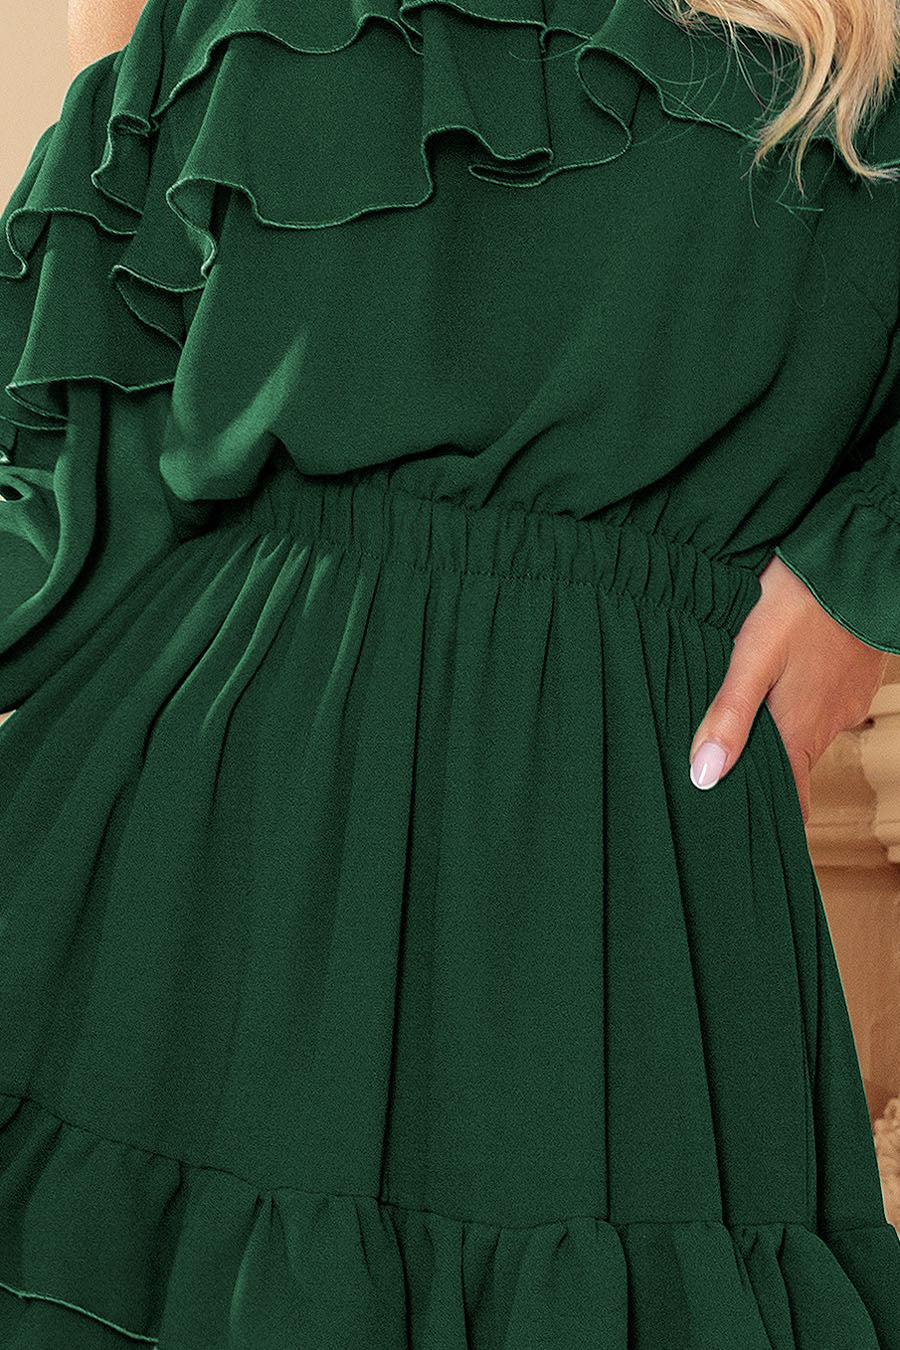 Γυναικείο φόρεμα Alanna, Πράσινο 7